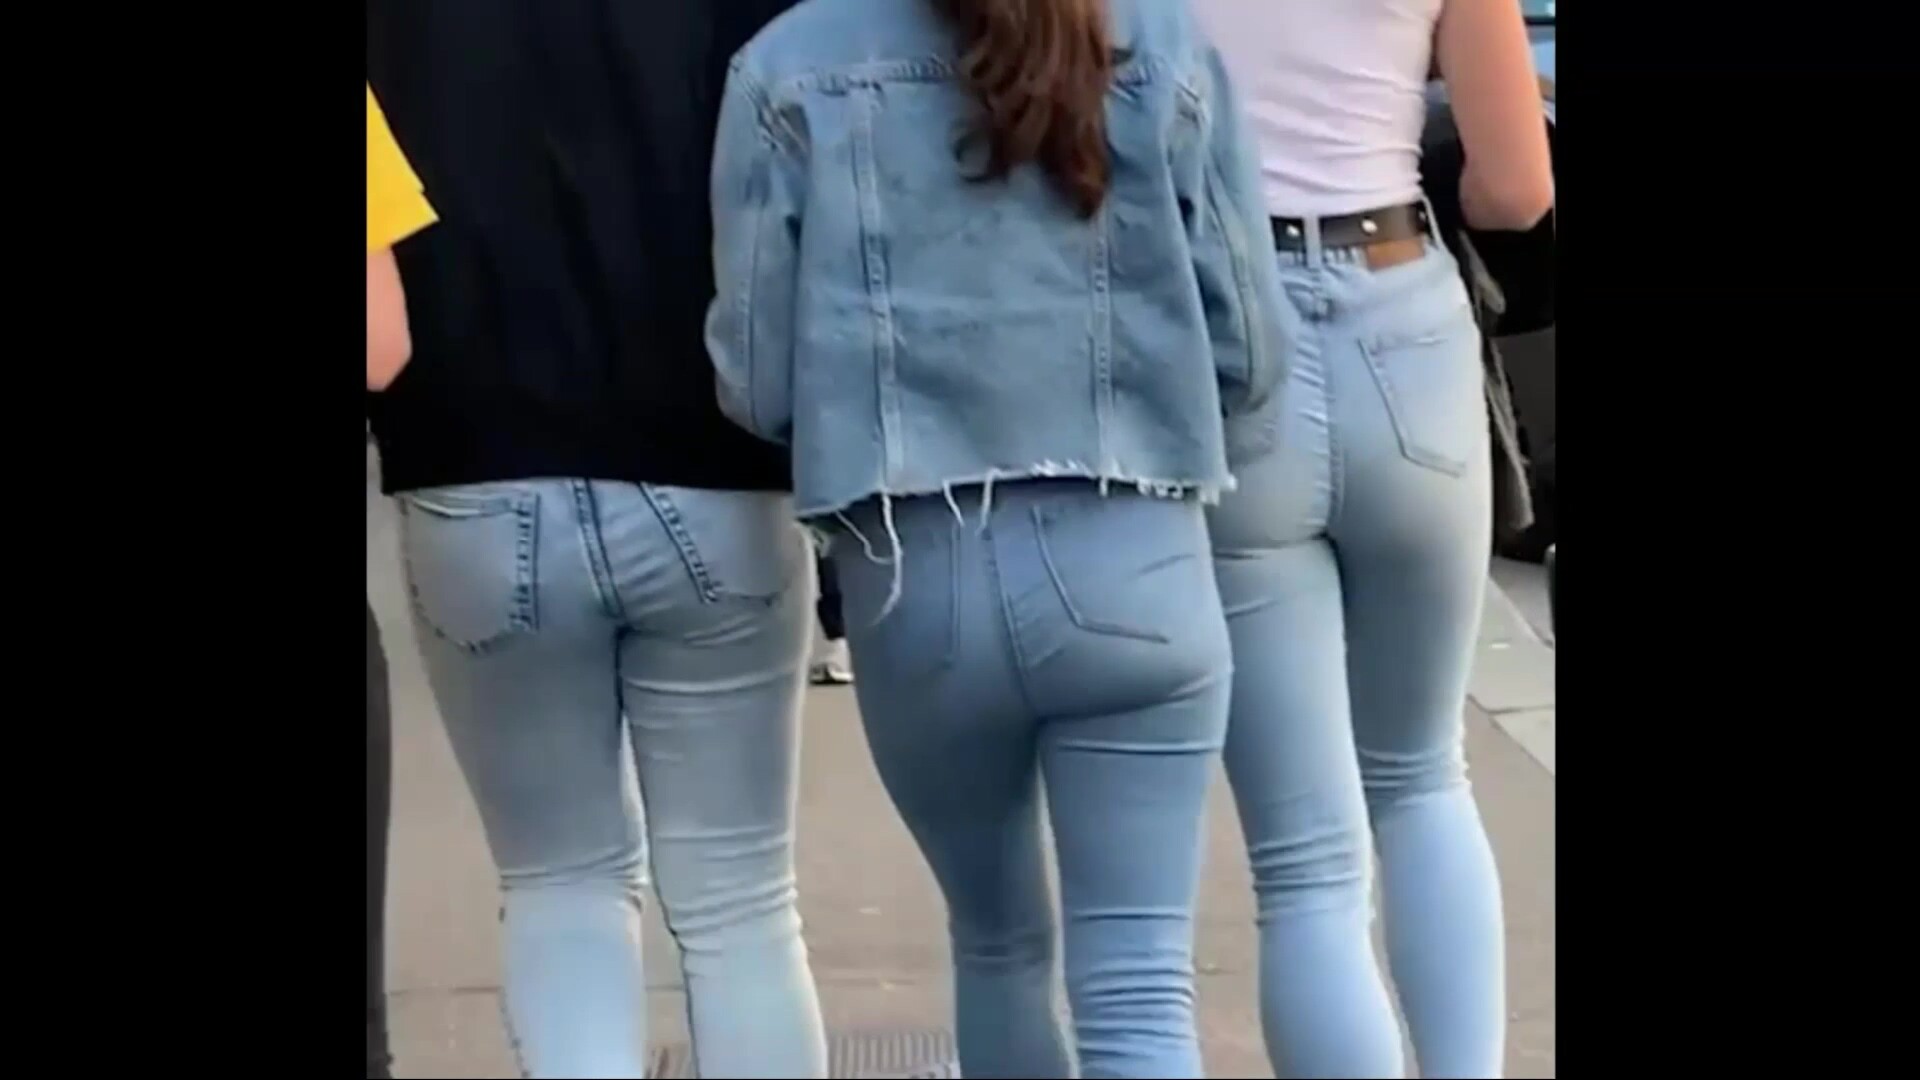 nakes moms jeans candid public voyeur